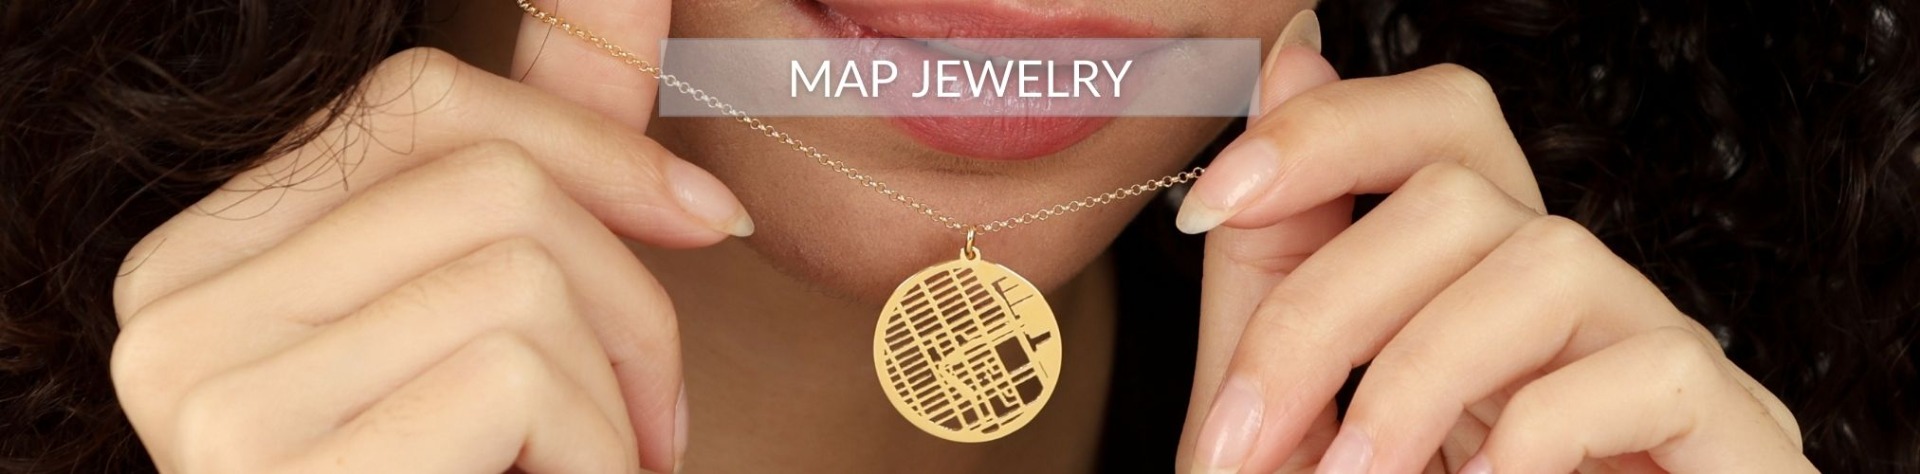 Maps Jewelry